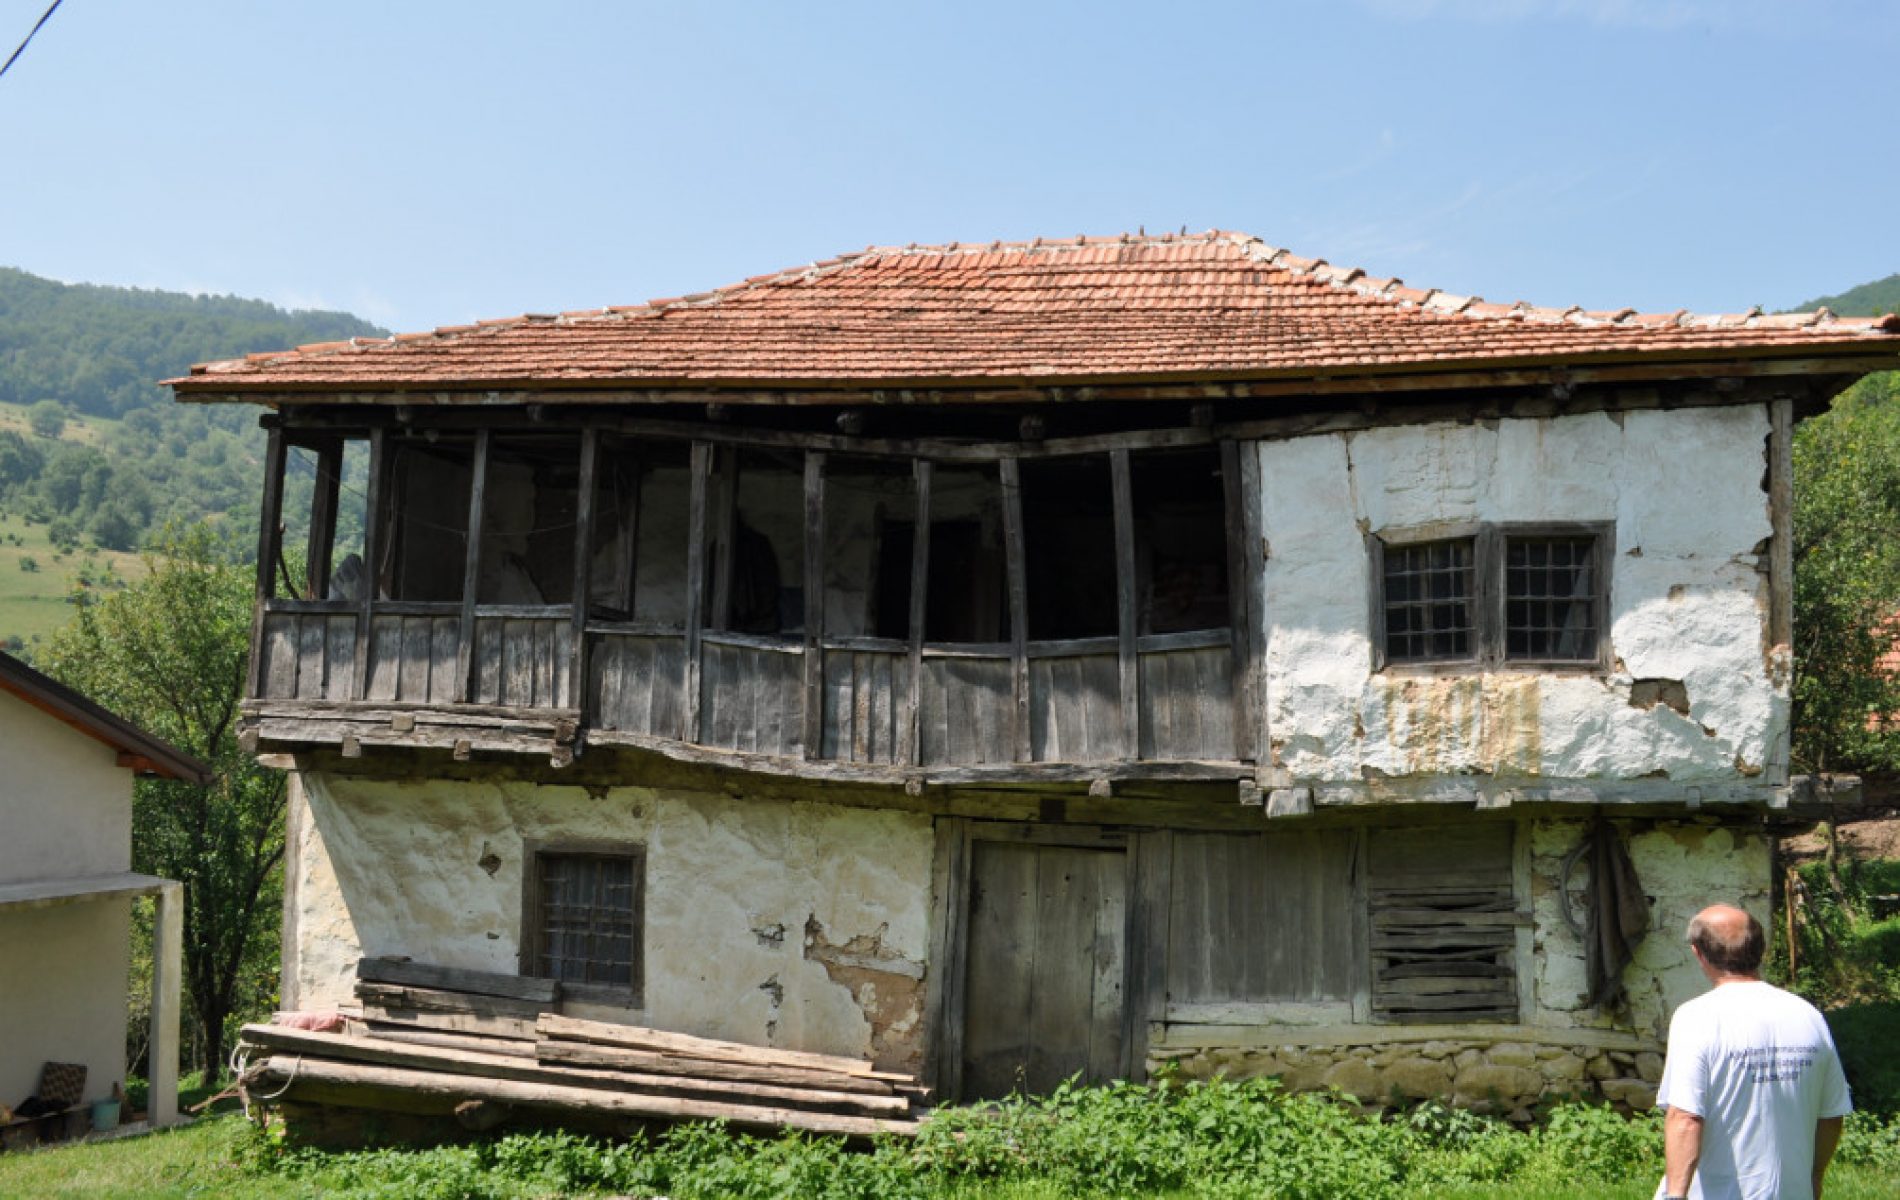 Kuća Ferida Herende: Zbog historijske vrijednosti, trebala bi biti zaštićena